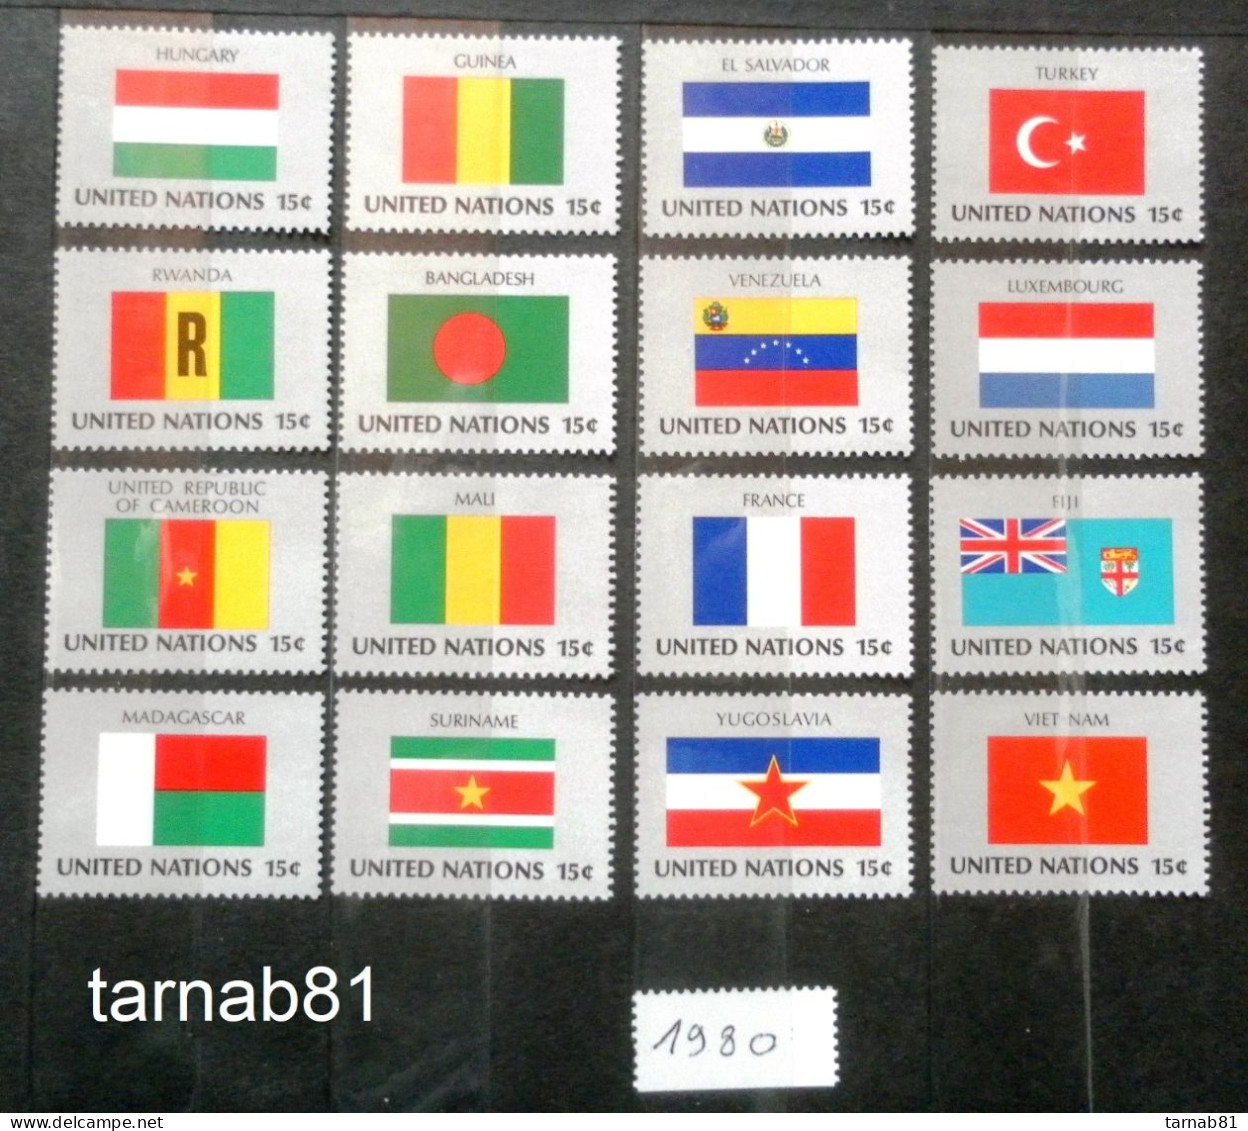 Flaggen Flag Drapeau 1980 1981 1982 1983 1984 1985 1986 1987 1988 1989 1997 1998 1999 2001 2007 2013 2014 2017 2018 2020 - Stamps